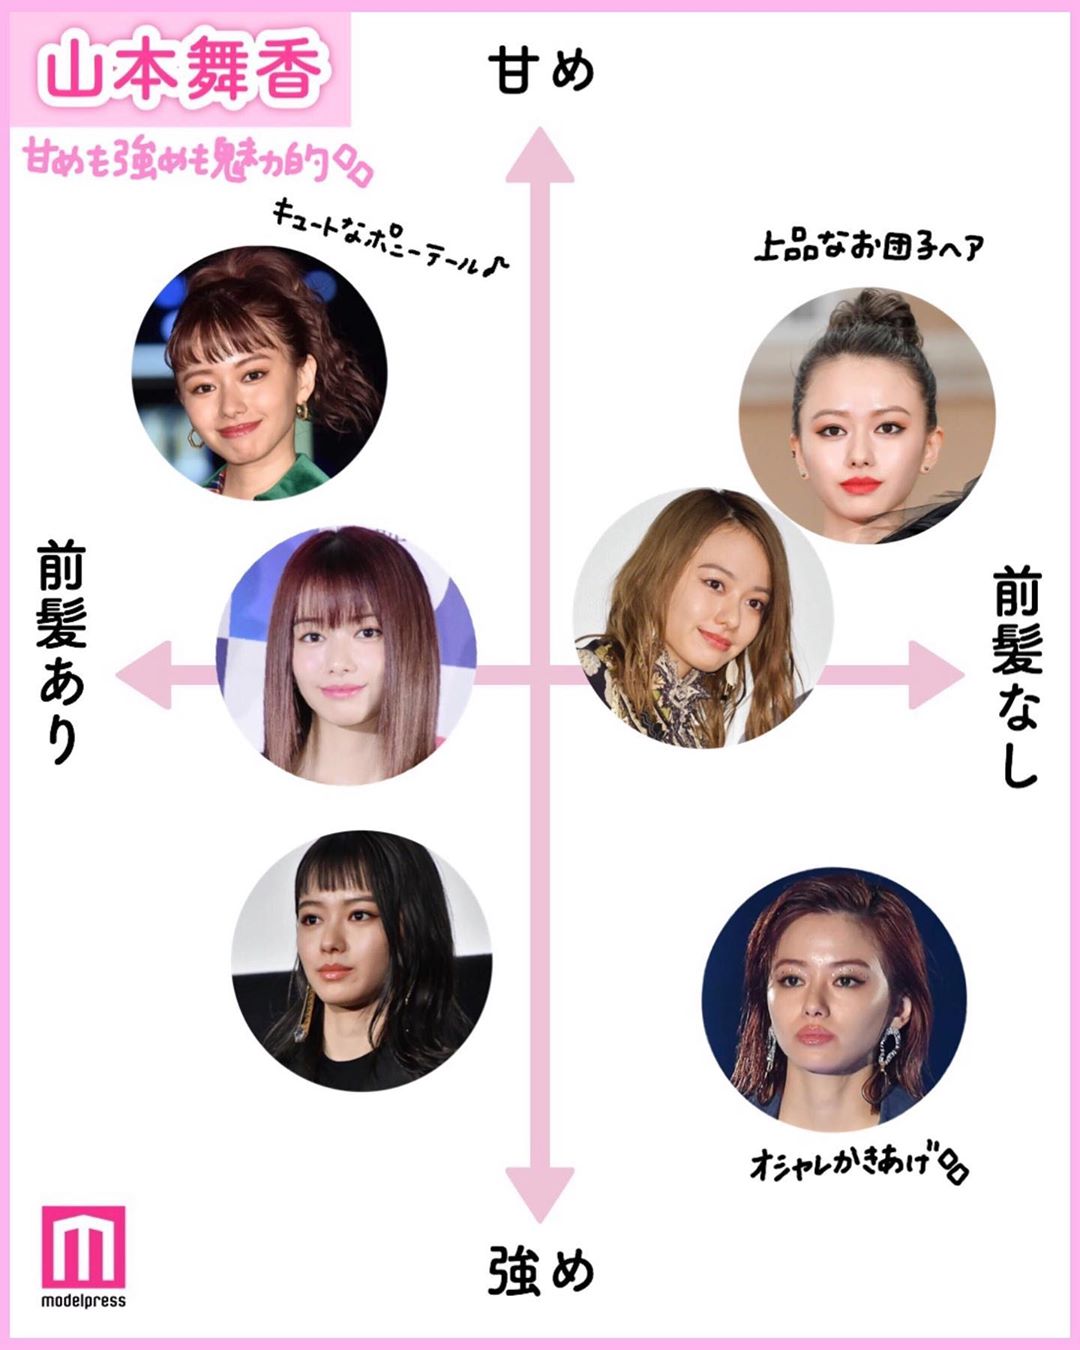 Modelpress モデルプレス 芸能人のヘアスタイル比較 Part2 好評につき第2弾 様々なヘアスタイルで幅広い魅力を演出している 6人の芸能人をピックアップ Wacoca Japan People Life Style